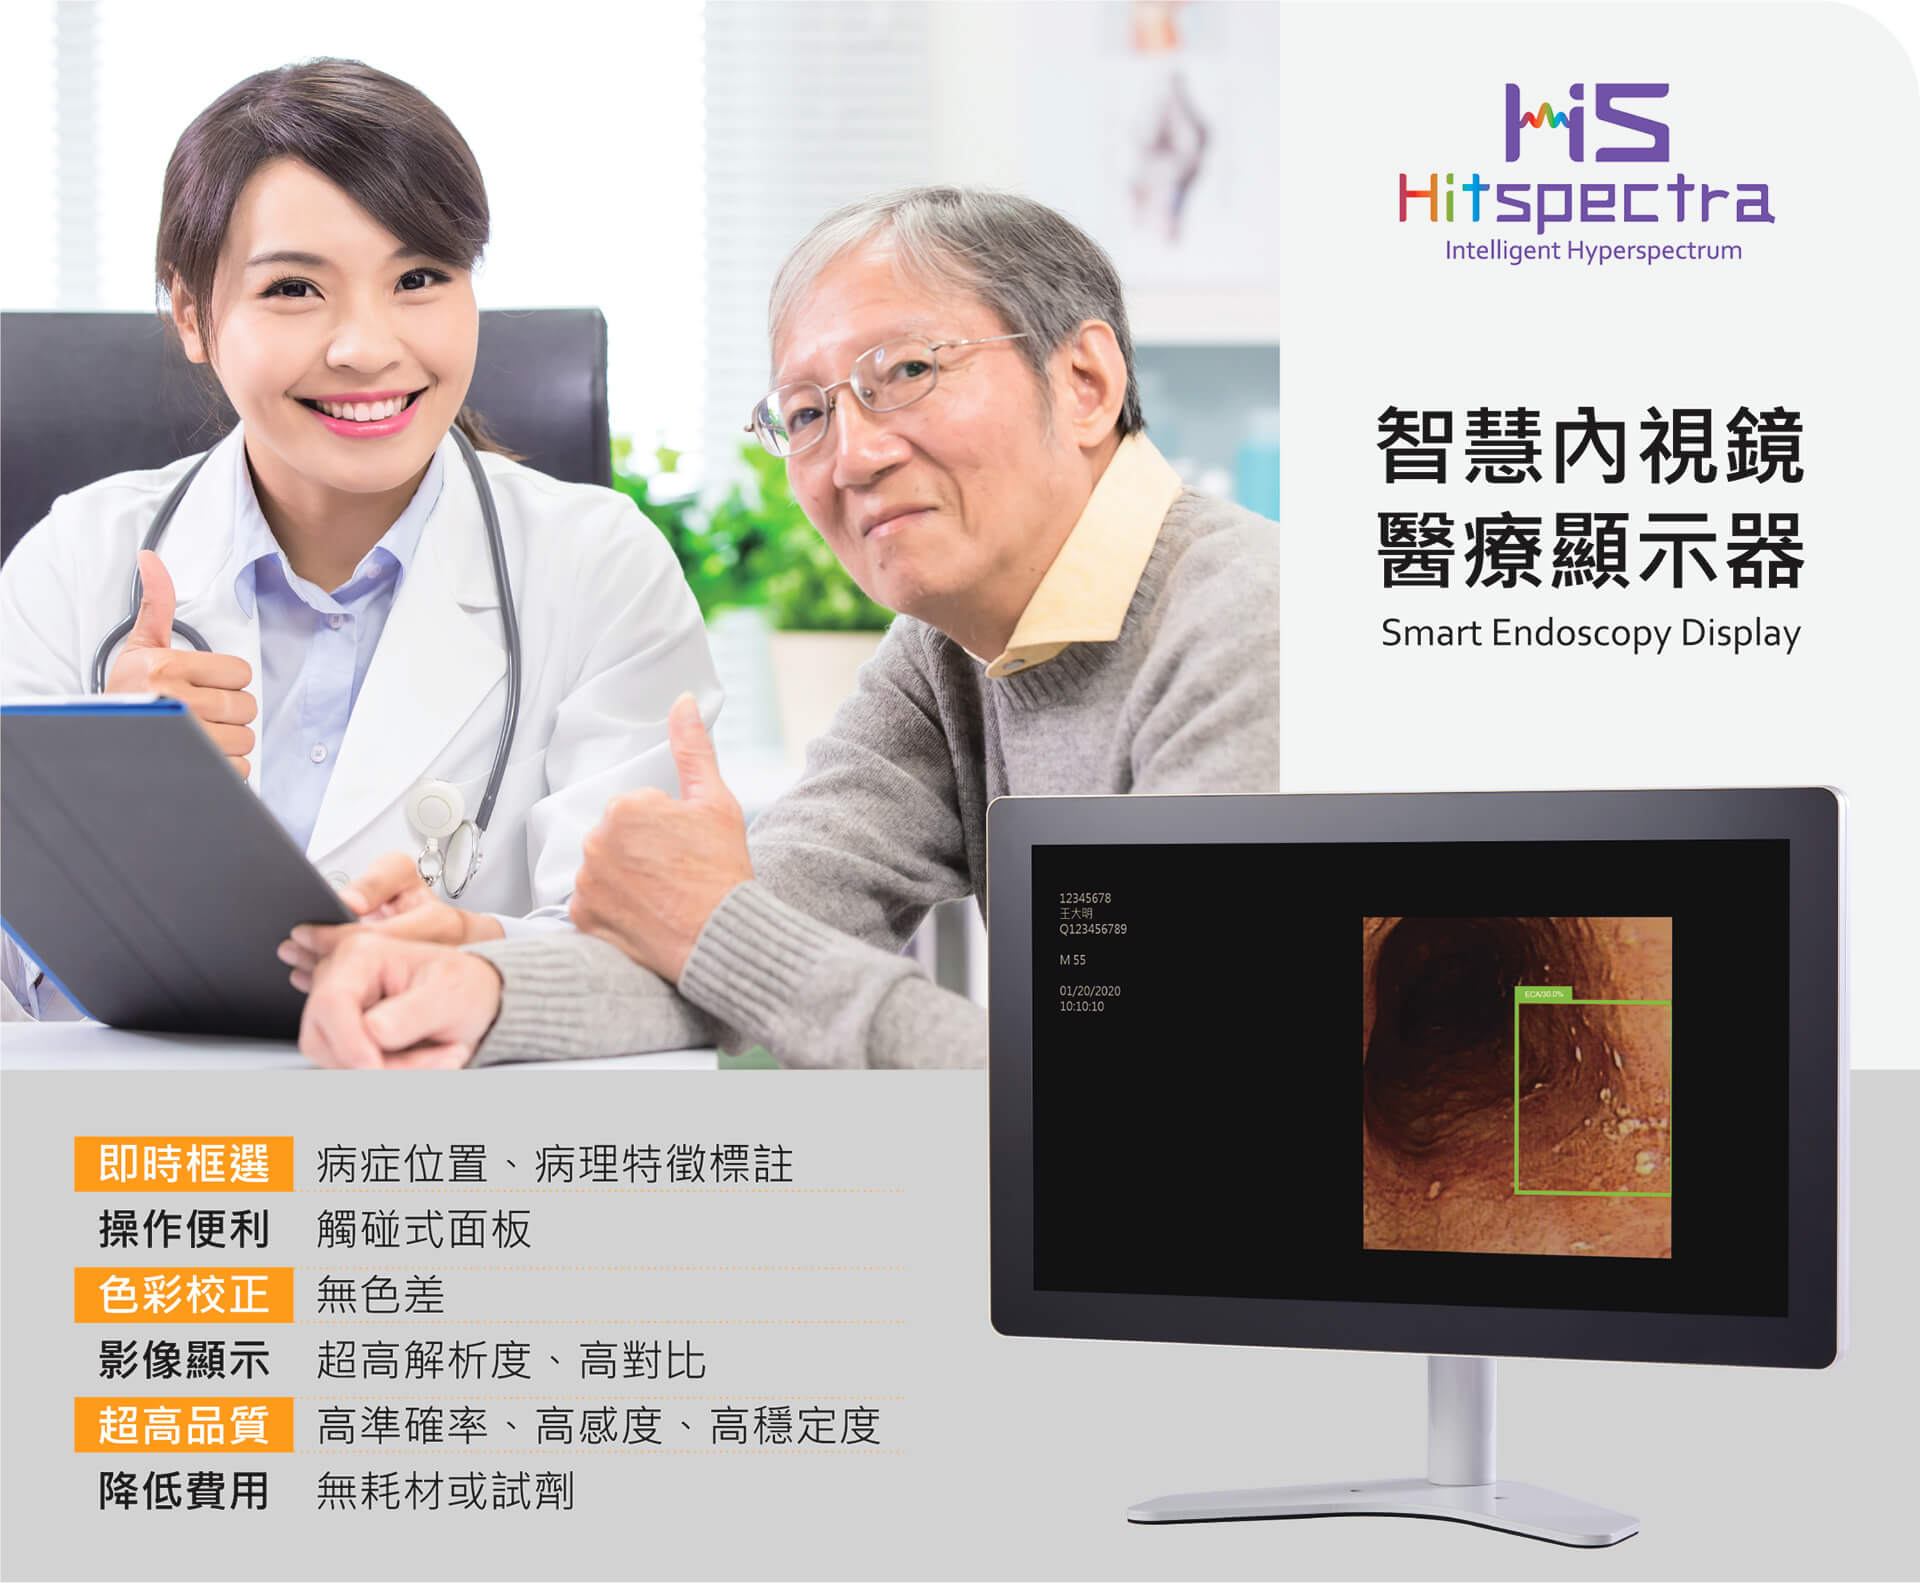 智慧內視鏡醫療顯示器-高光譜影像、人工智慧辨識系統，讓食道癌更早被發現